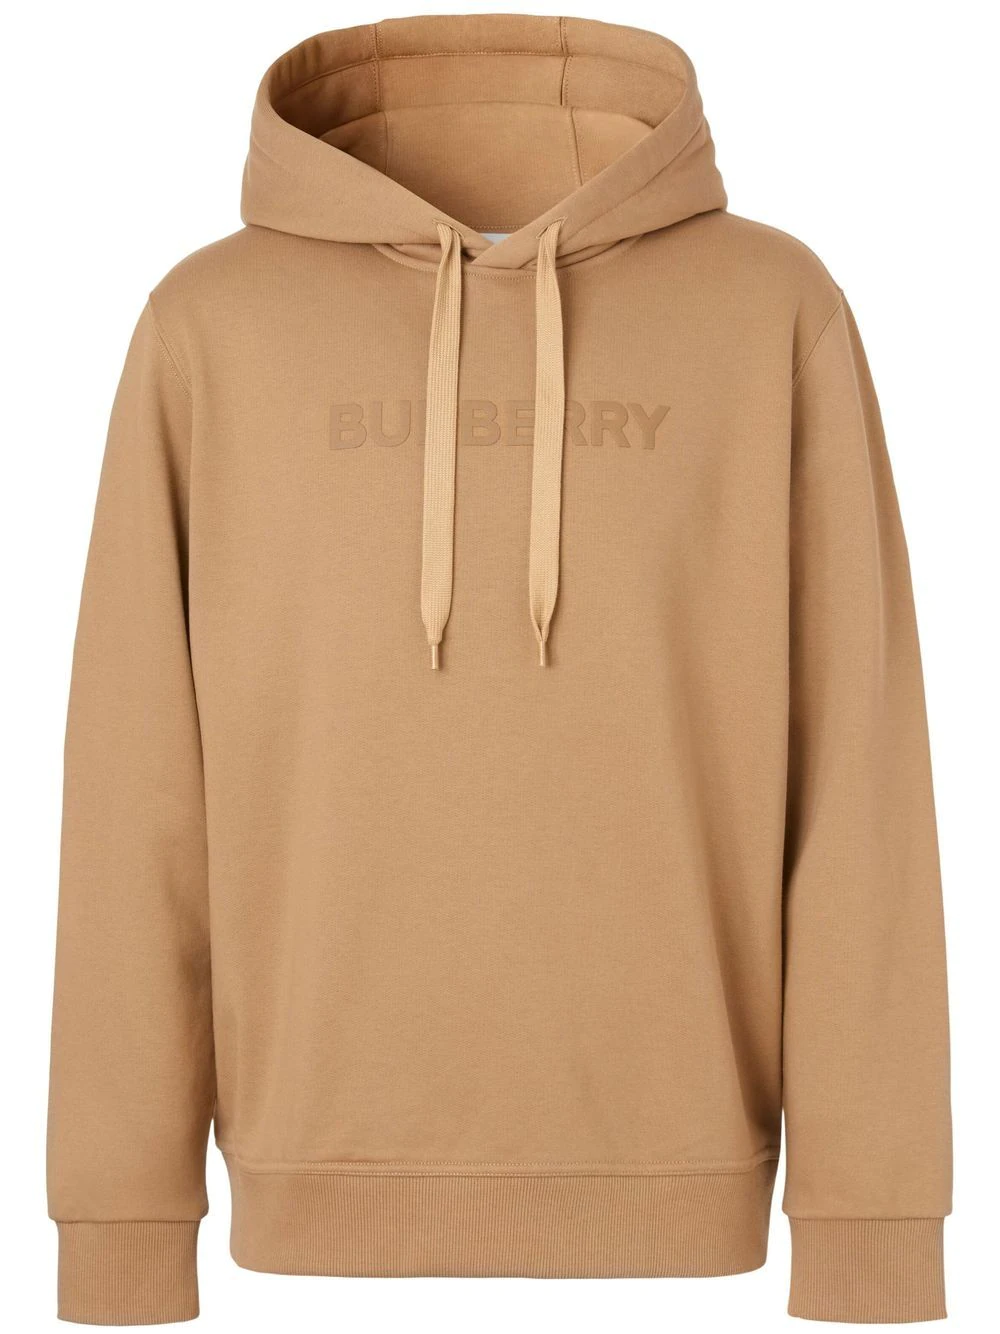 Burberry Hooded Sweatshirt 80553171